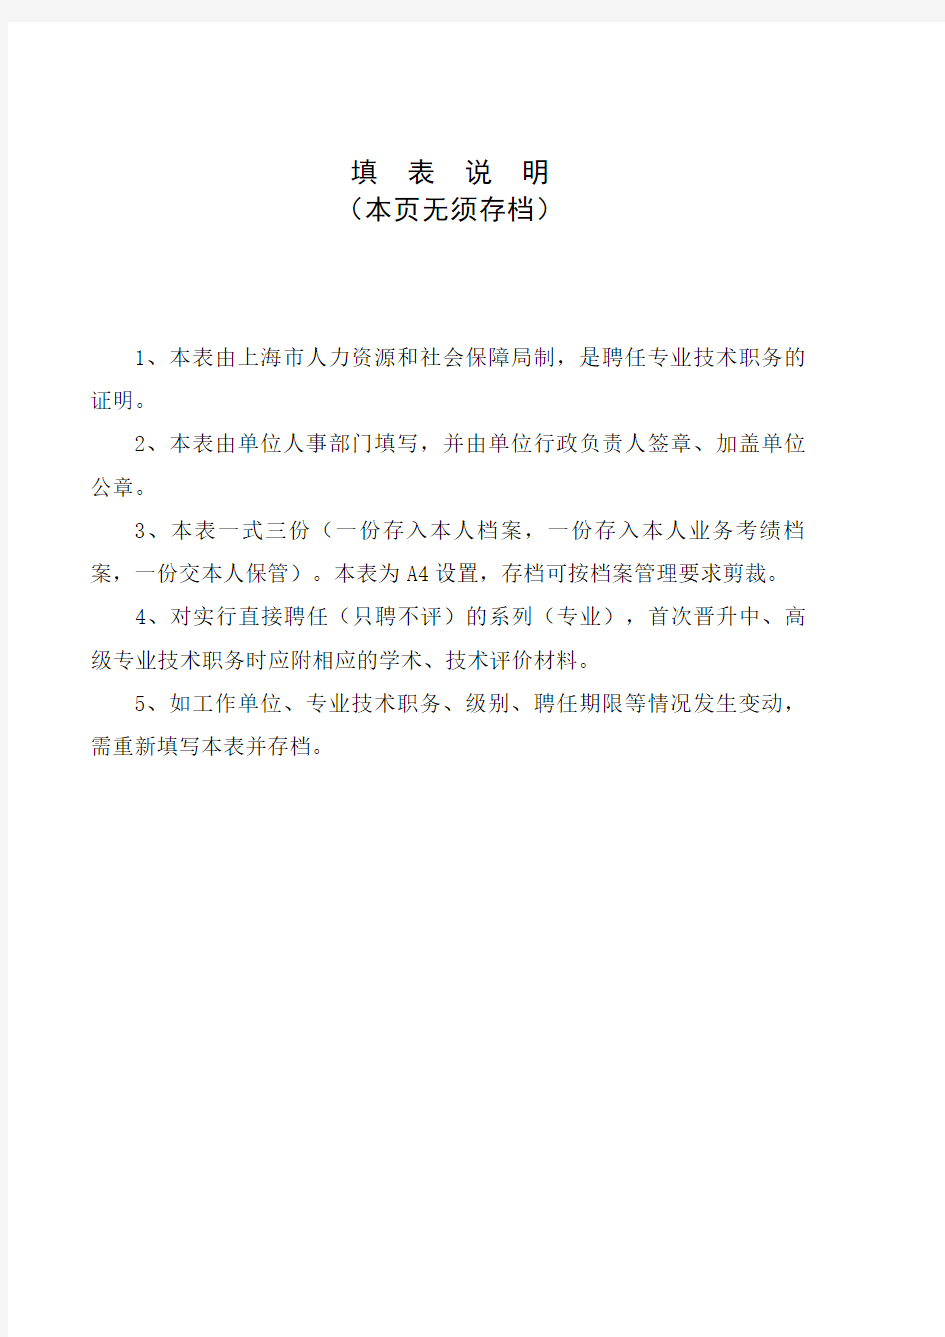 上海专业技术职务聘任表 职称评定聘书模板